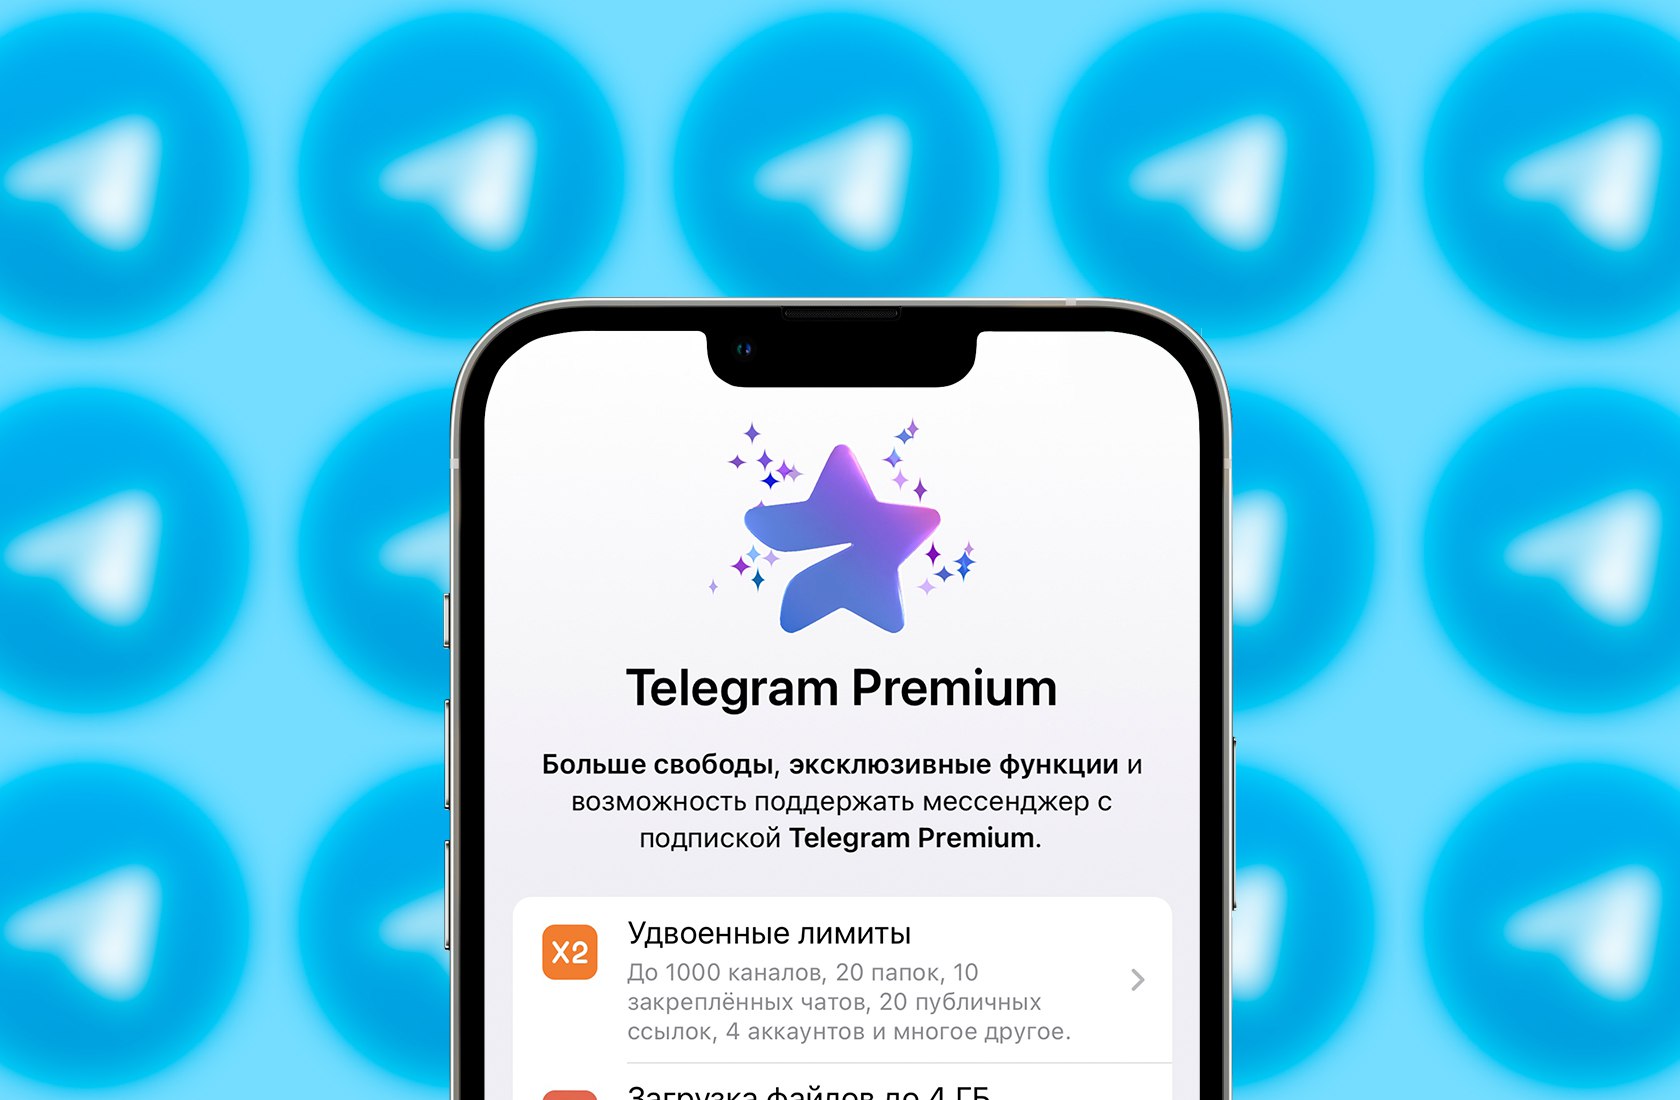 Телеграм премиум за смс. Телеграм Premium. Подписка Telegram Premium. Платная подписка в телеграм. Телеграмм премиум логотип.